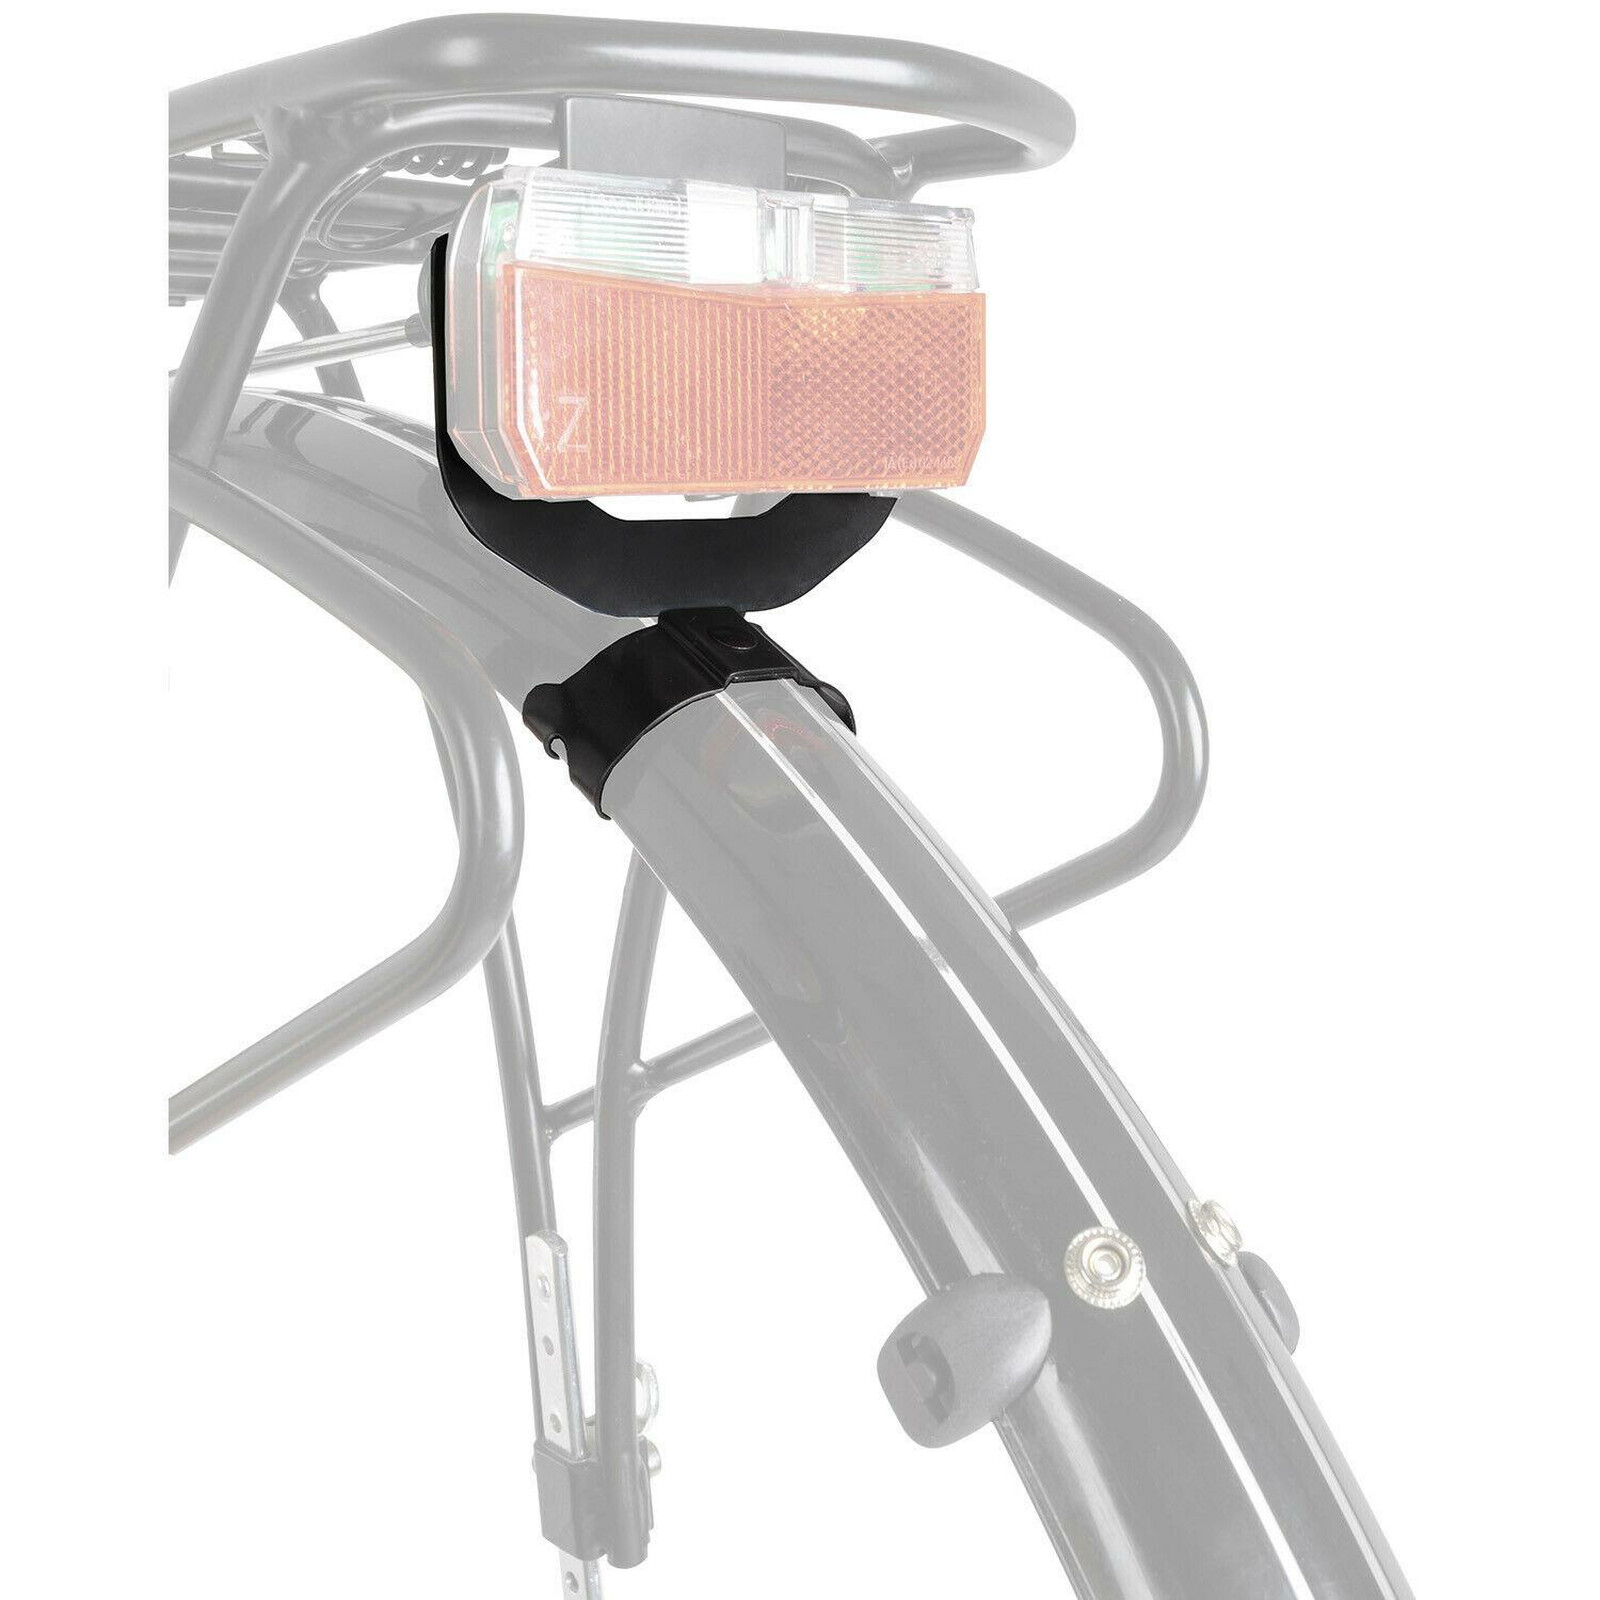 Fahrrad Halterung für Beleuchtung Licht Schutzblech hinten 80mm verst, 6,99  €